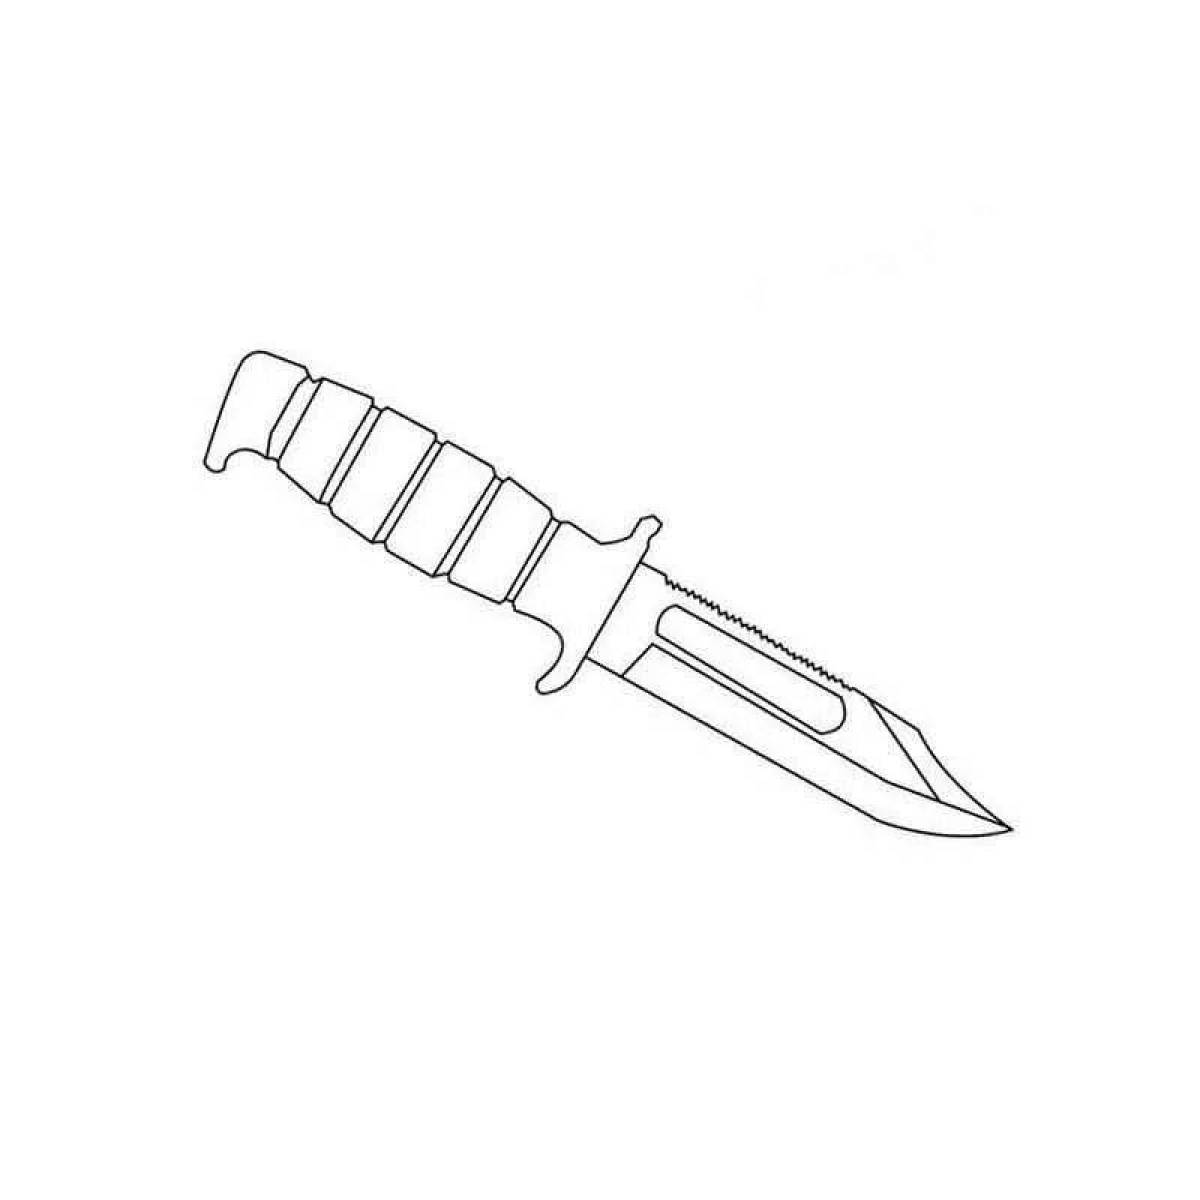 Раскраски стендофф ножи. M9 ножи в СТЕНДОФФ. М9 нож стандофф 2 чертеж. Черчож м9 из стандофф2. М 9 байонет нож стандофф 2.